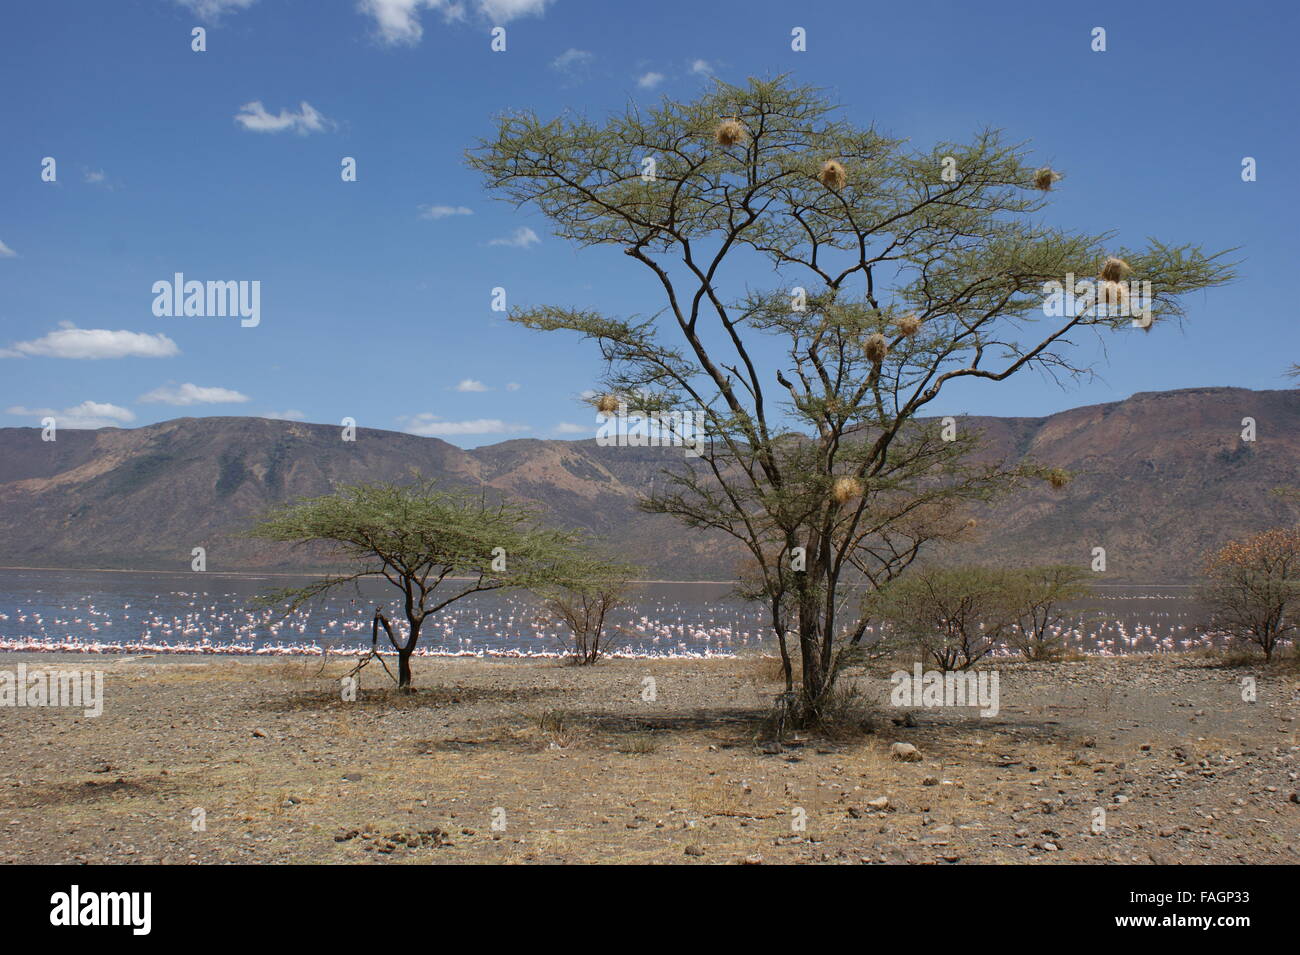 Der Baum am Ufer des Sees. Viele Vogelnester in den Zweigen. See mit Flamingos im Hintergrund. Kenia, Afrika Stockfoto